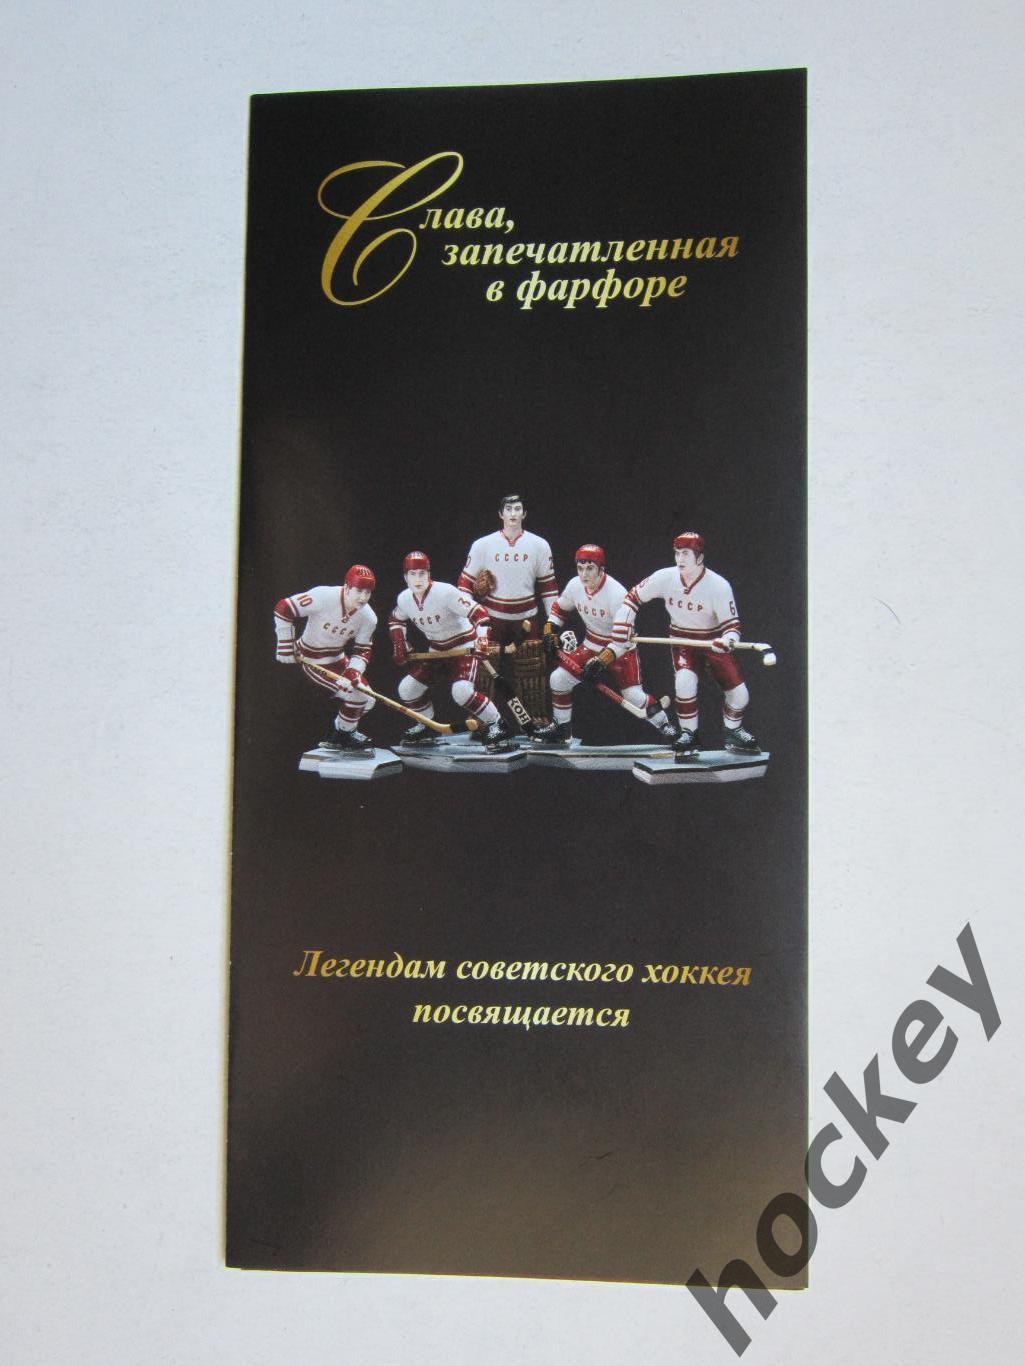 Легендам советского хоккея посвящается: Слава, запечатленная в фарфоре